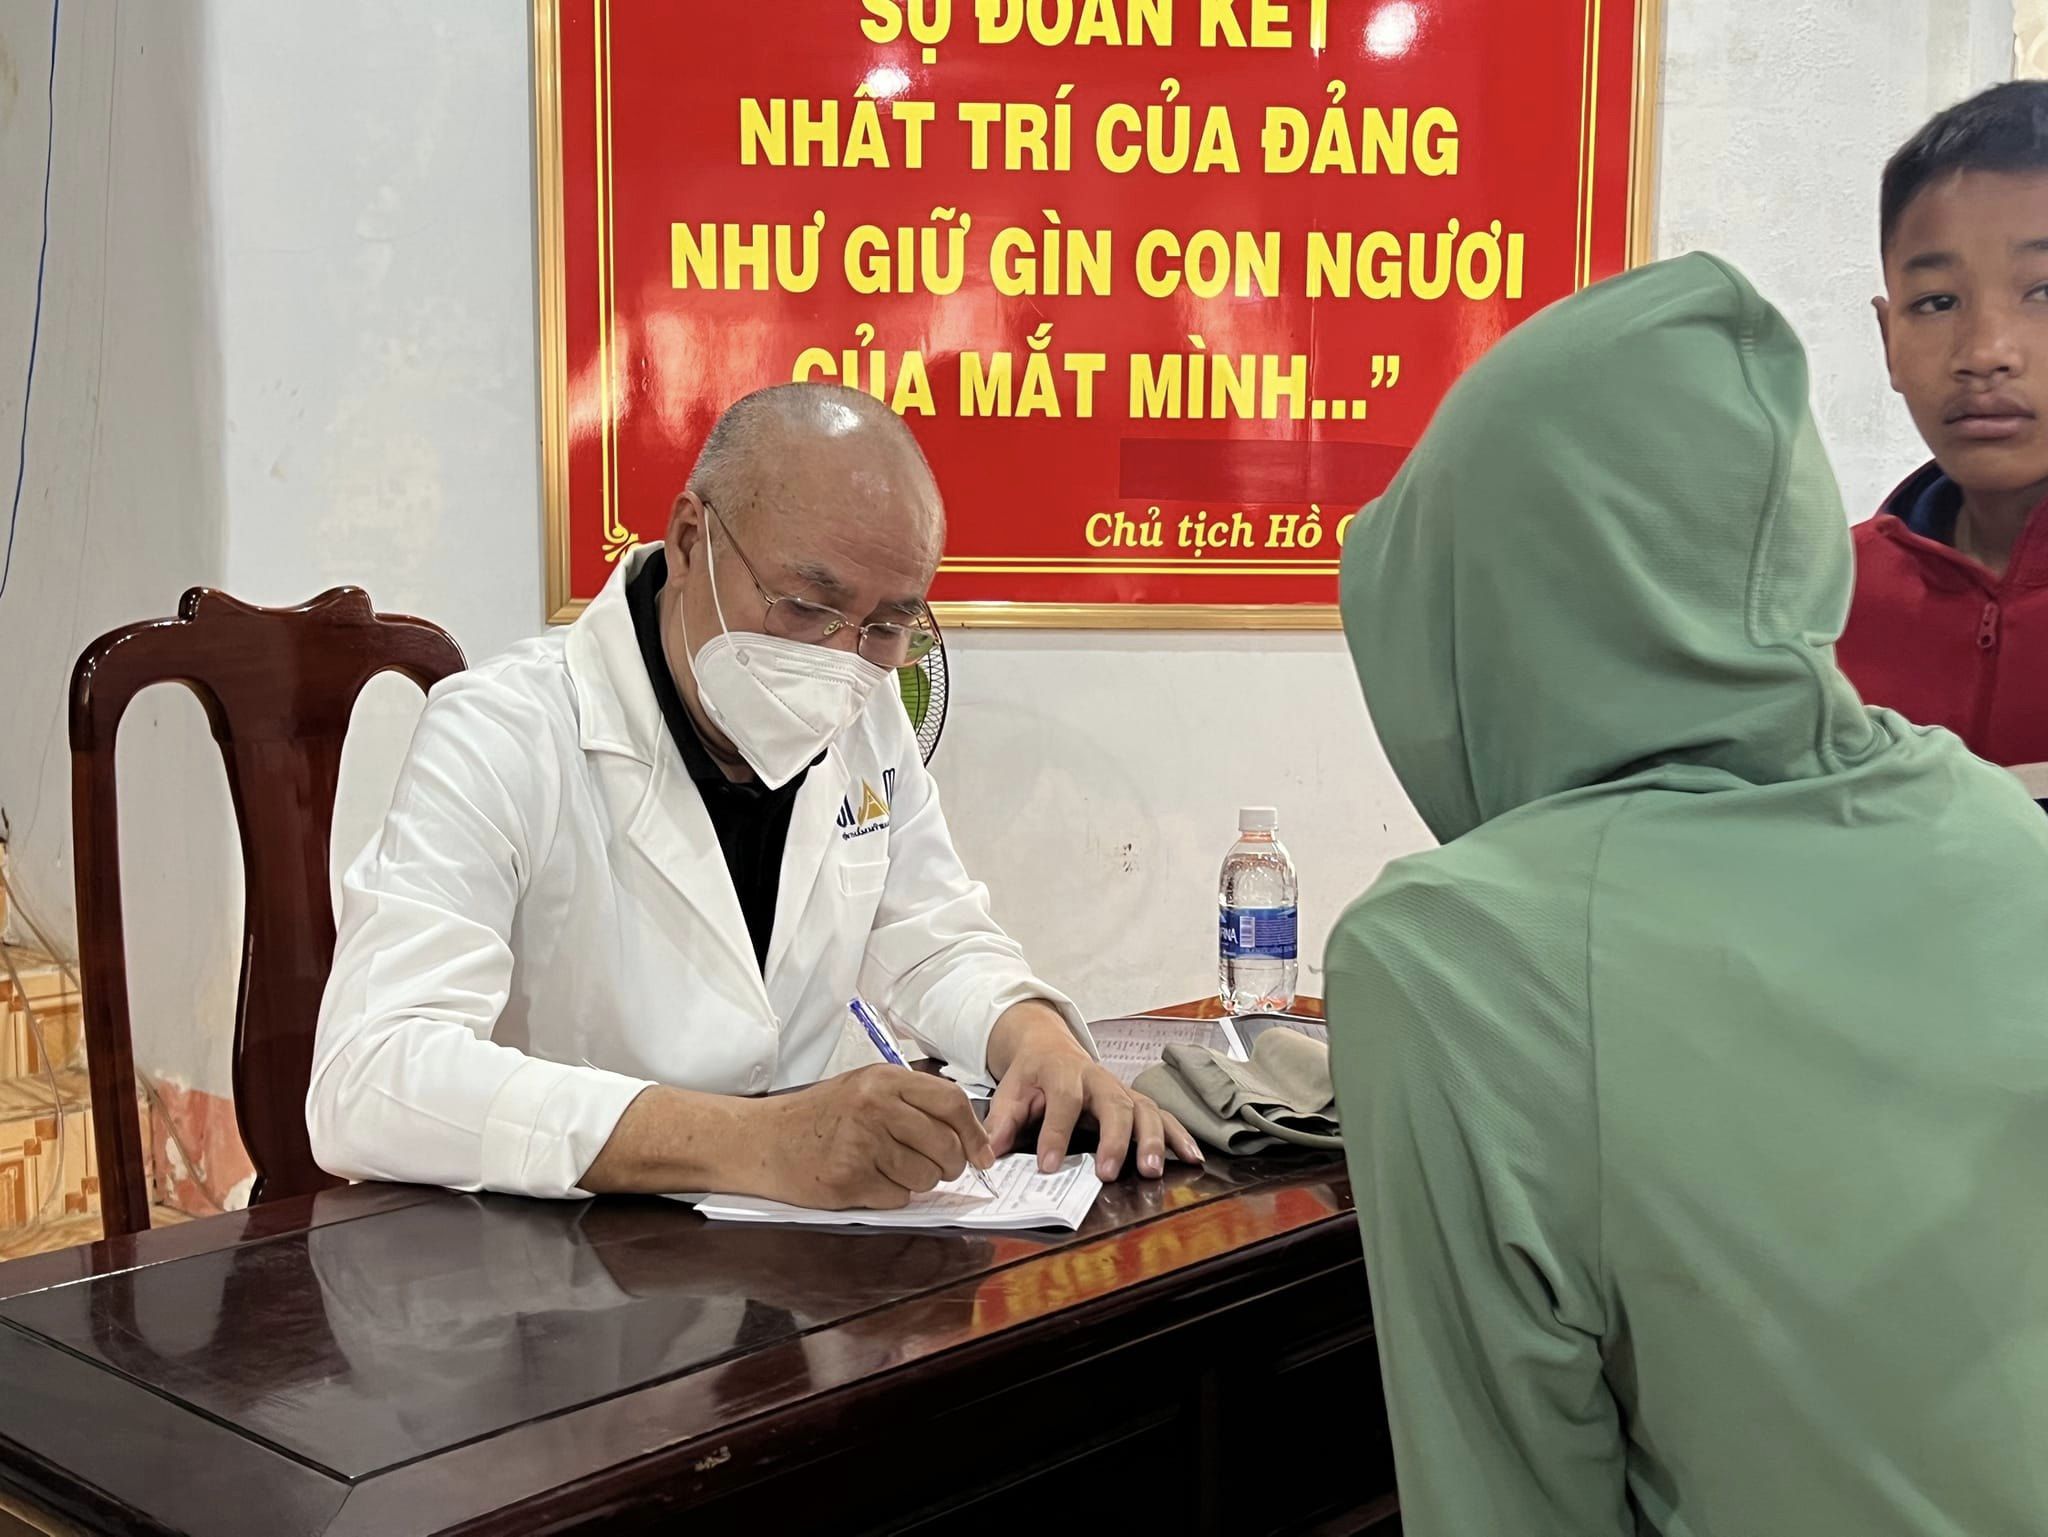 Dr. Huân tham gia chương trình khám chữa bệnh từ thiện 2022